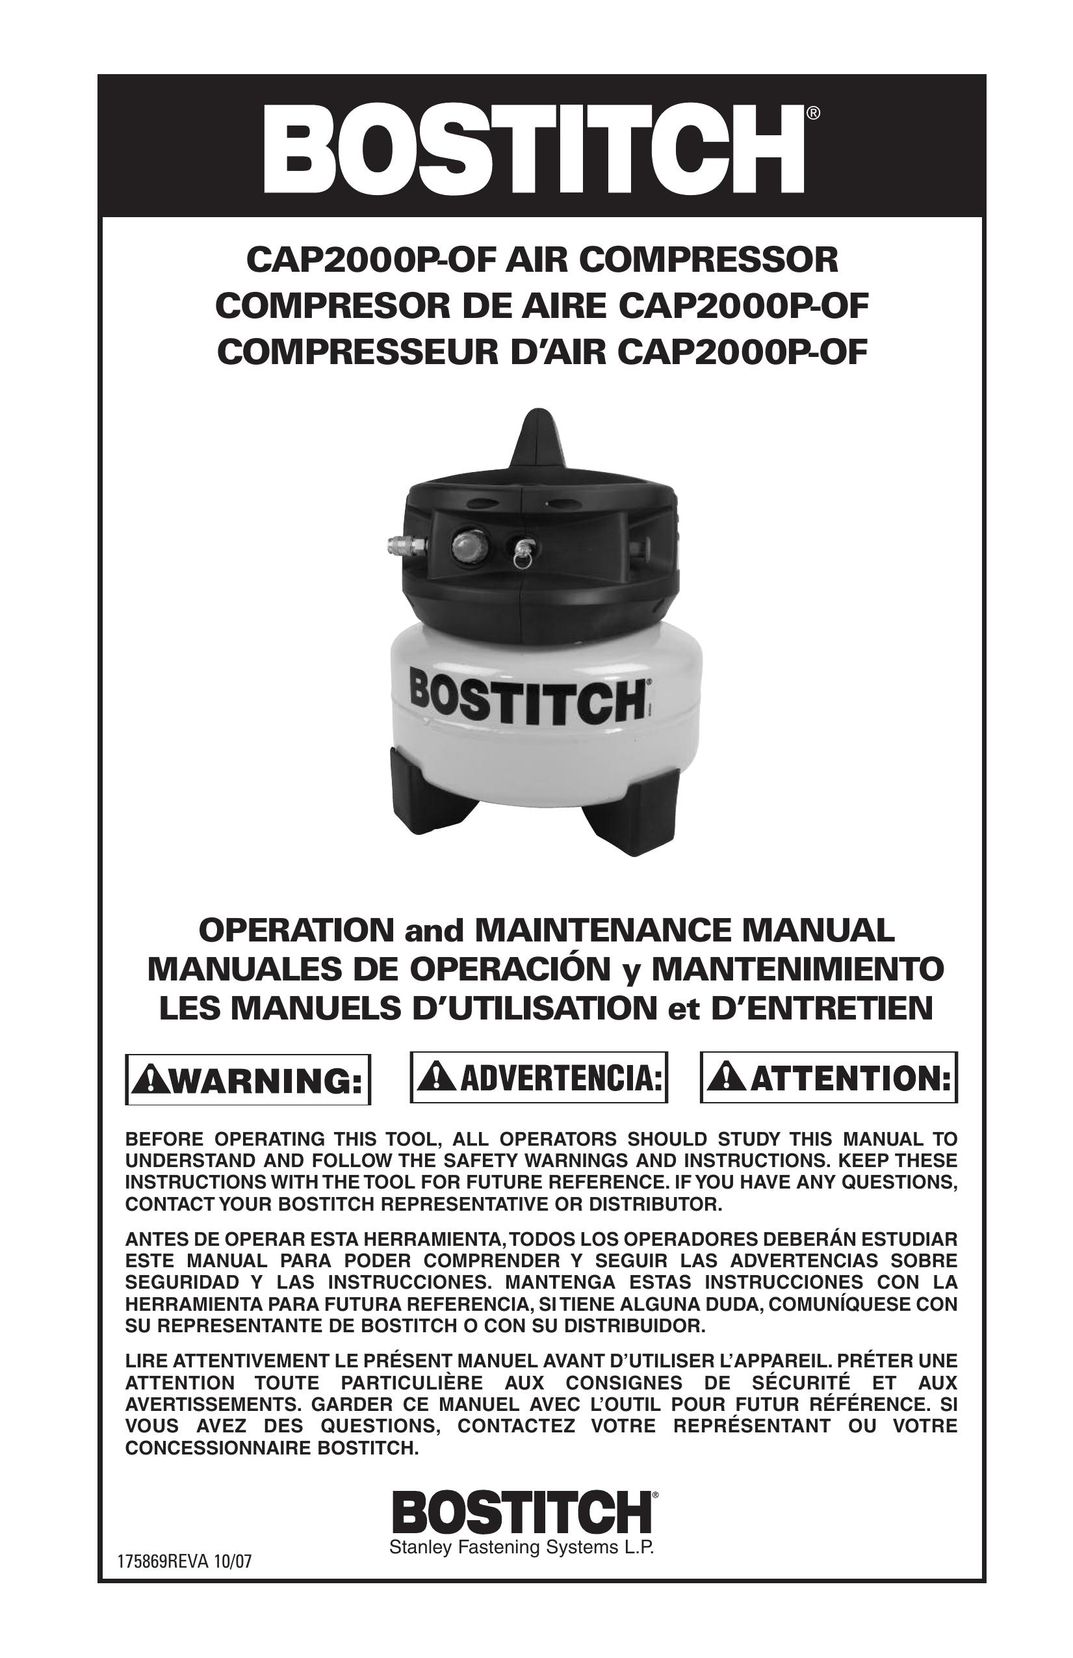 Bostitch CAP2000P-OF Air Compressor User Manual